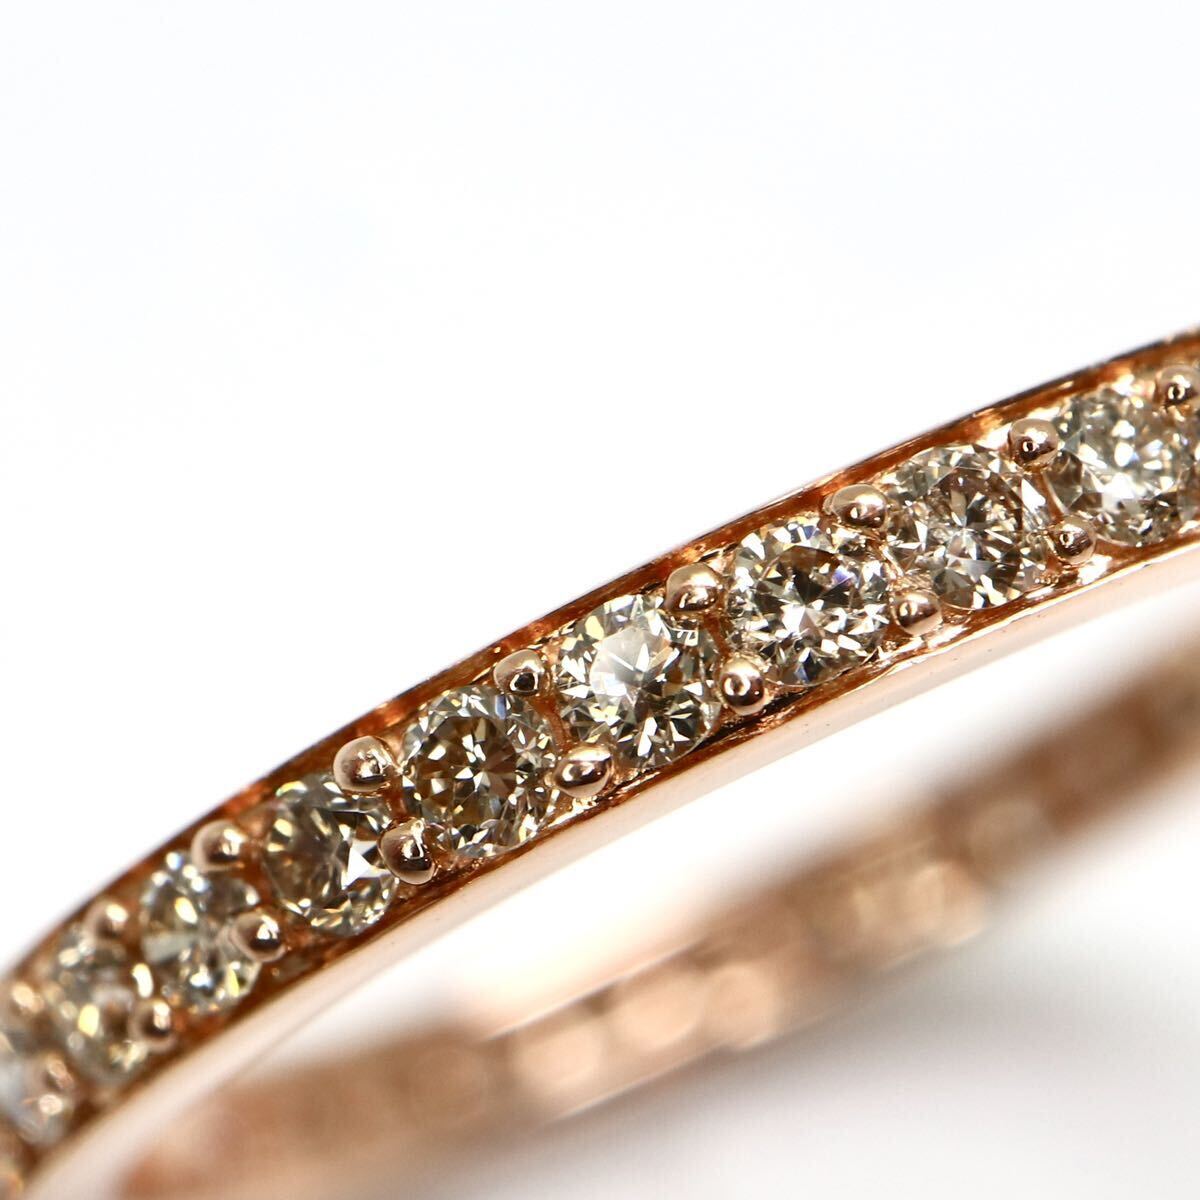 GSTV(ジーエスティーヴィー)《K18 天然ダイヤモンド フルエタニティ リング》A 約1.7g 13号 0.55ct diamond ジュエリー ring 指輪 EB3/EC1の画像5